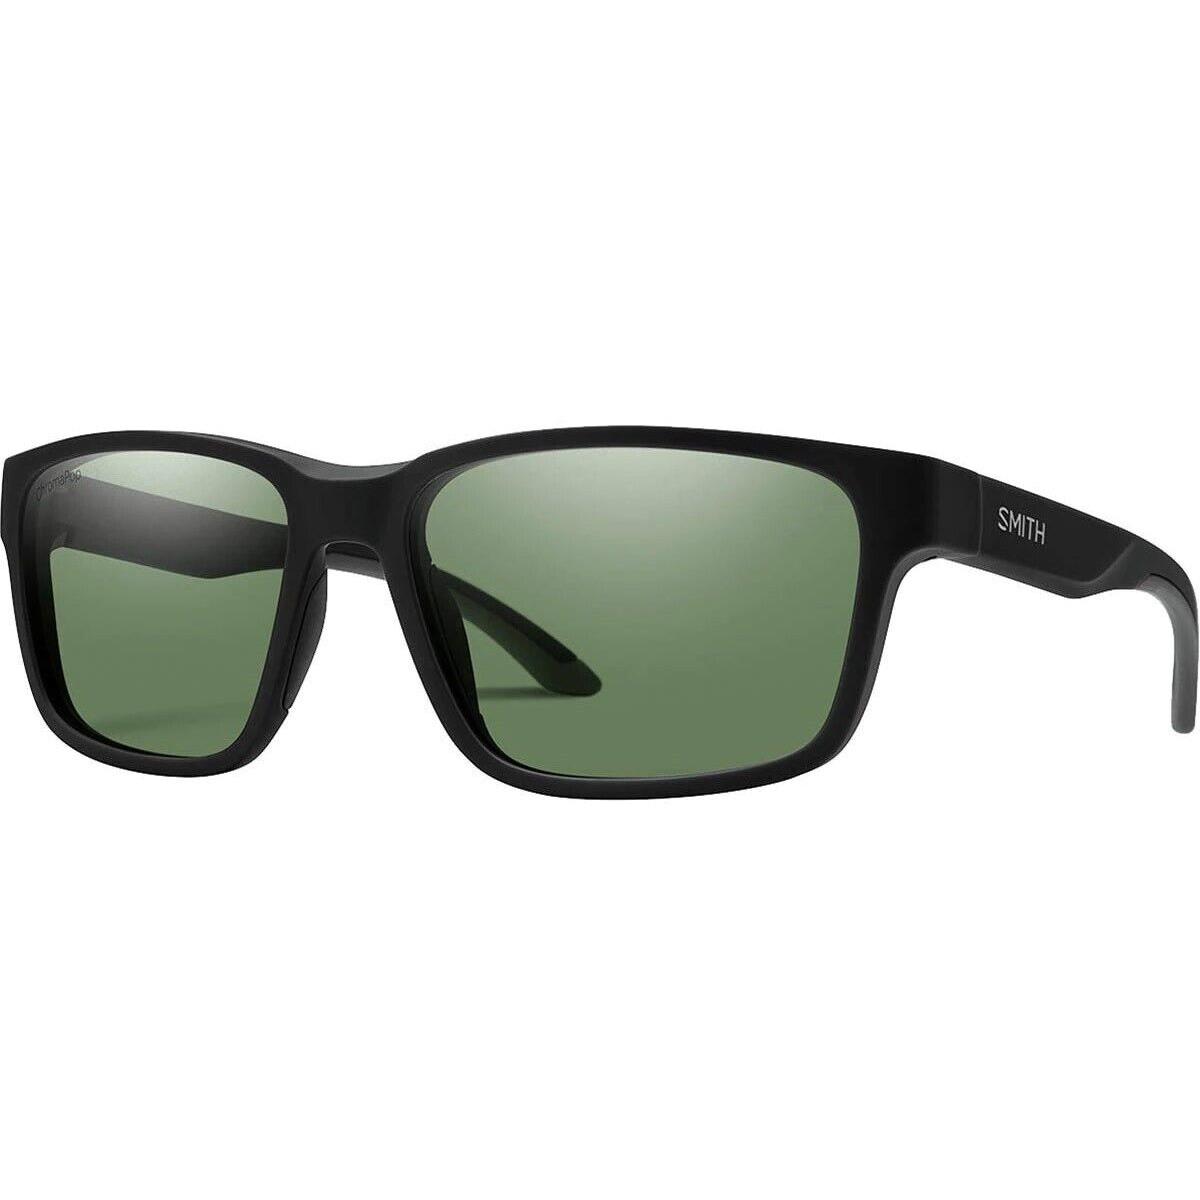 Smith Basecamp Sunglasses Matte Black Frame Polarized Gray Green Lens